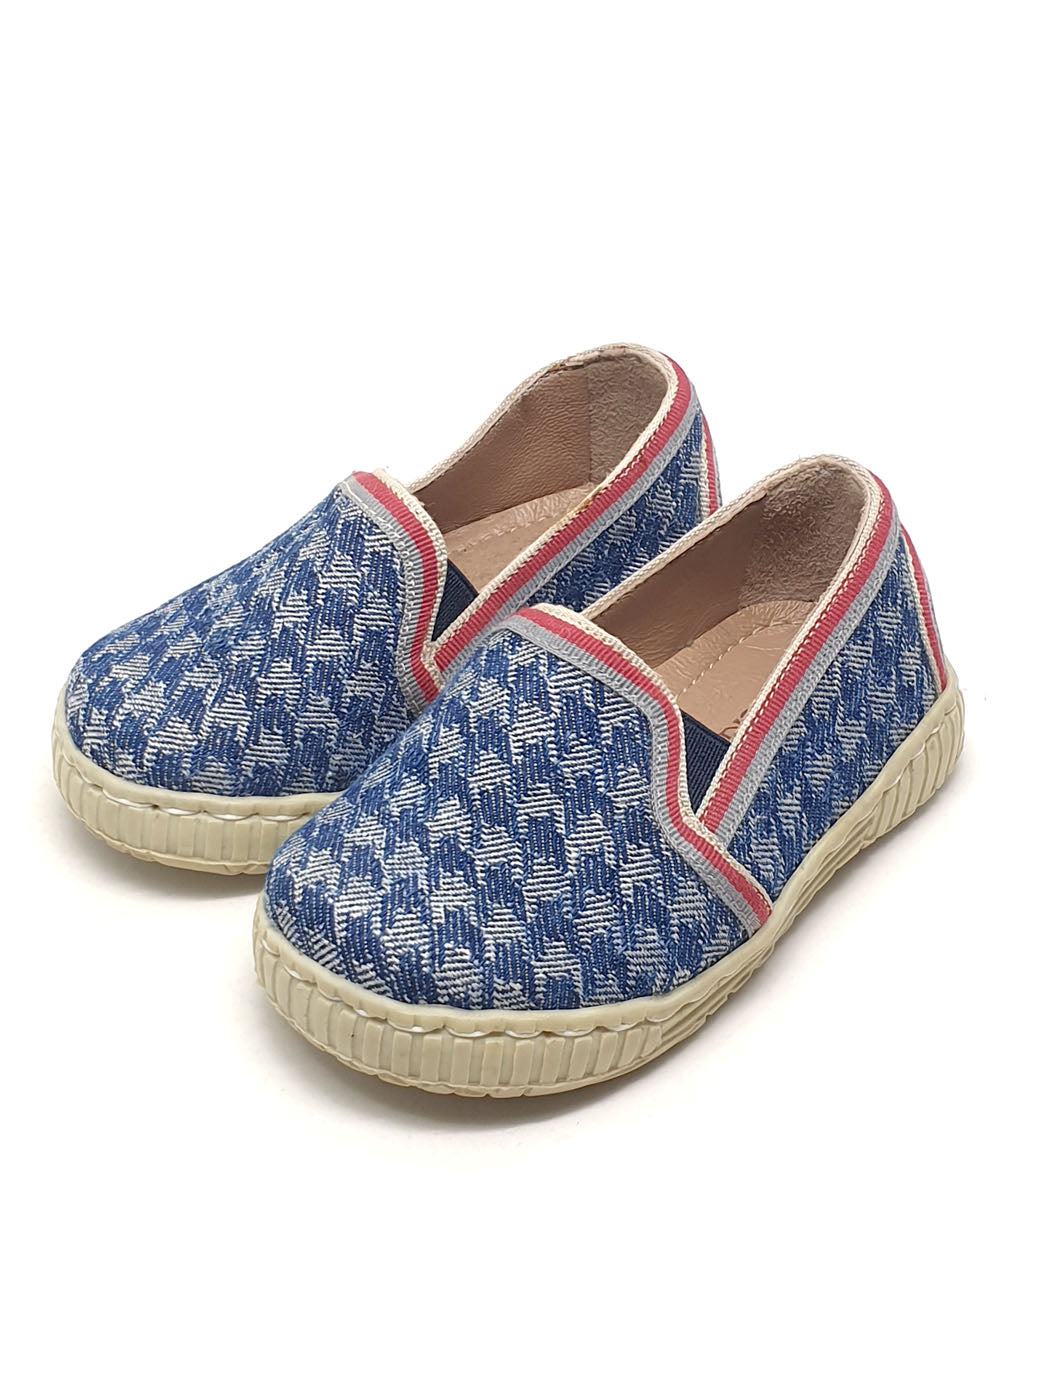 Baby's shoe sneaker for Boy-DC014 blue